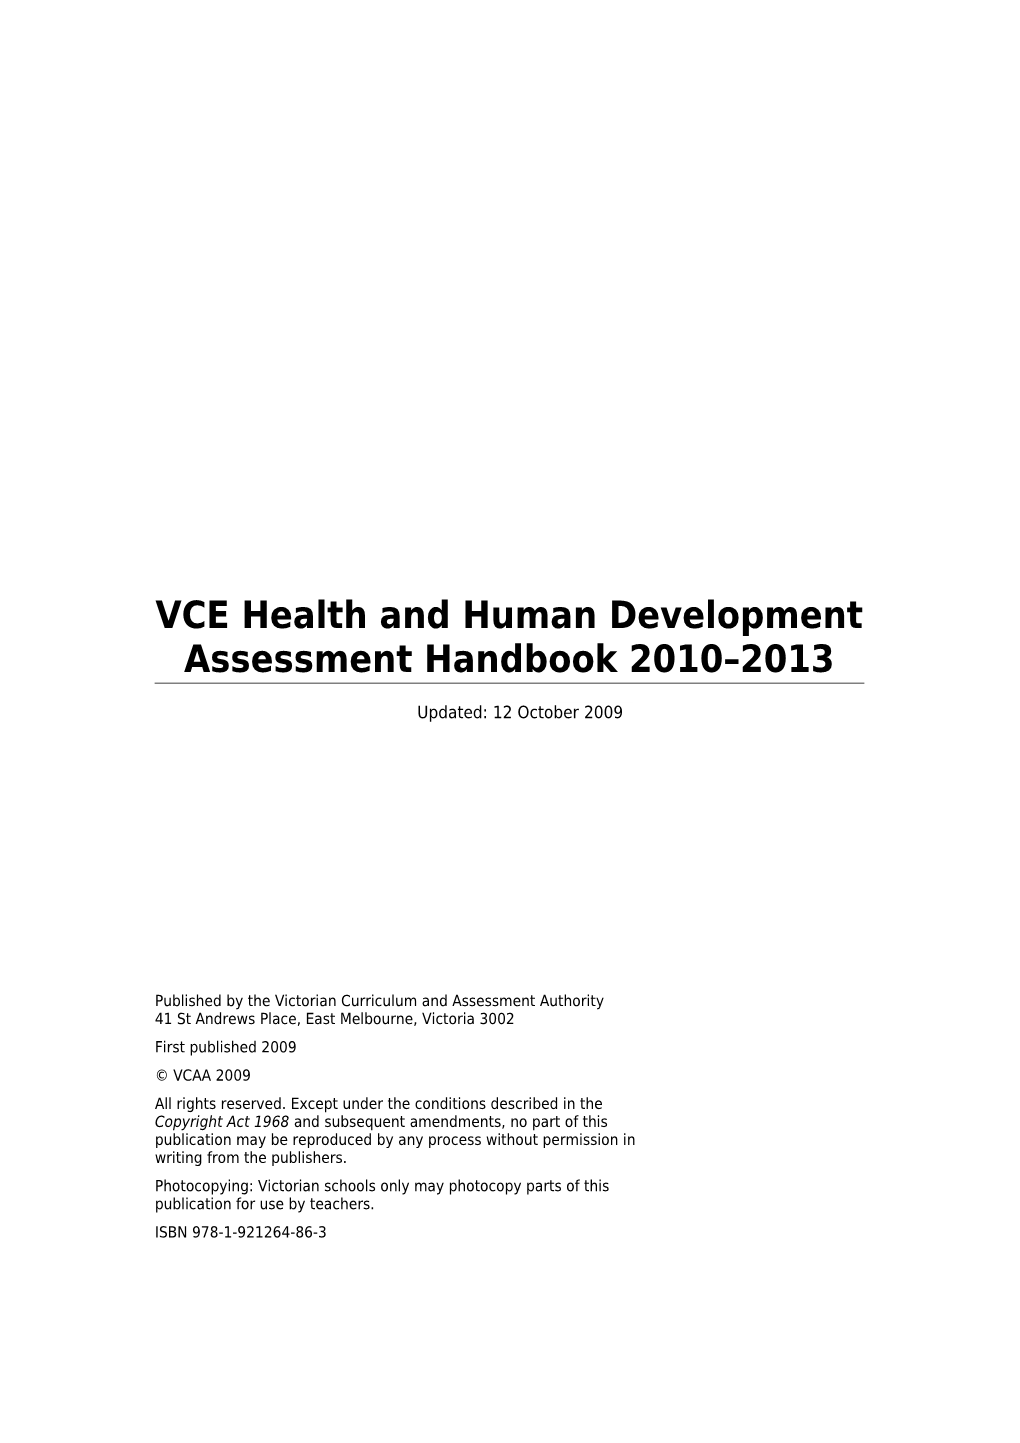 VCE Health and Human Development Assessment Handbook 2010-2013